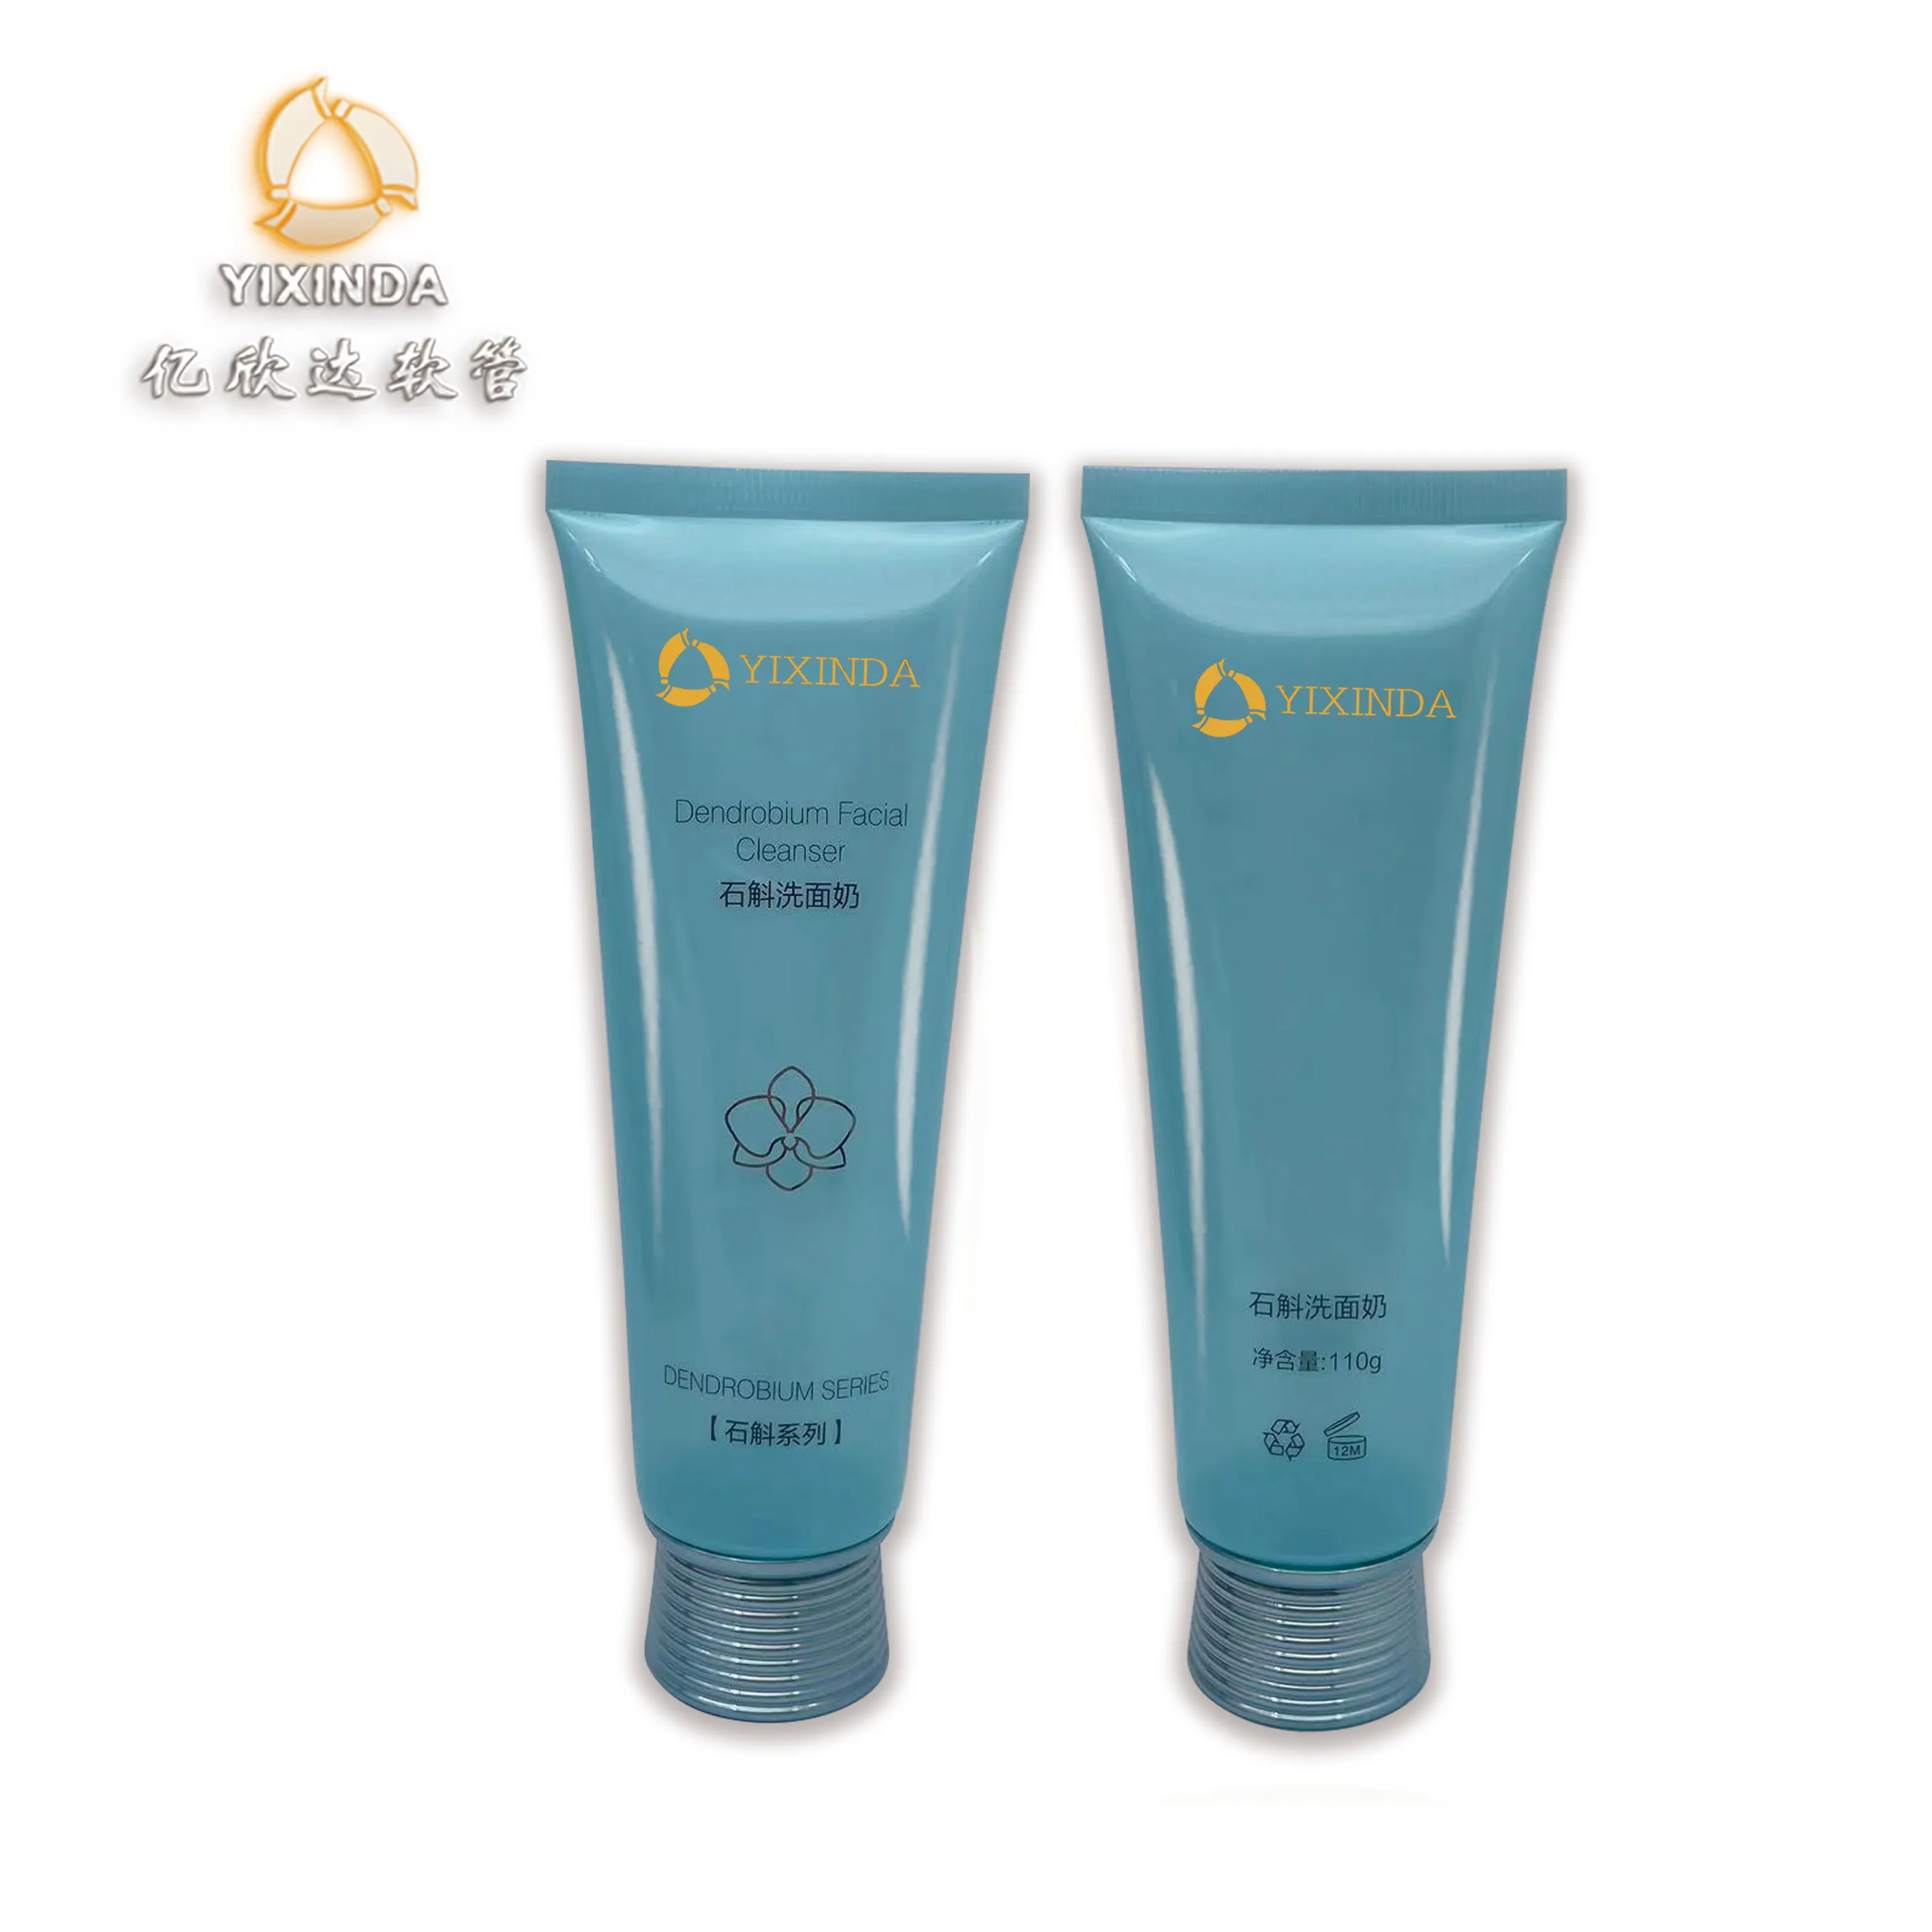 YI XIN DA Dendrobium очищающее средство для лица, блеск для макияжа, прозрачная пластиковая трубка